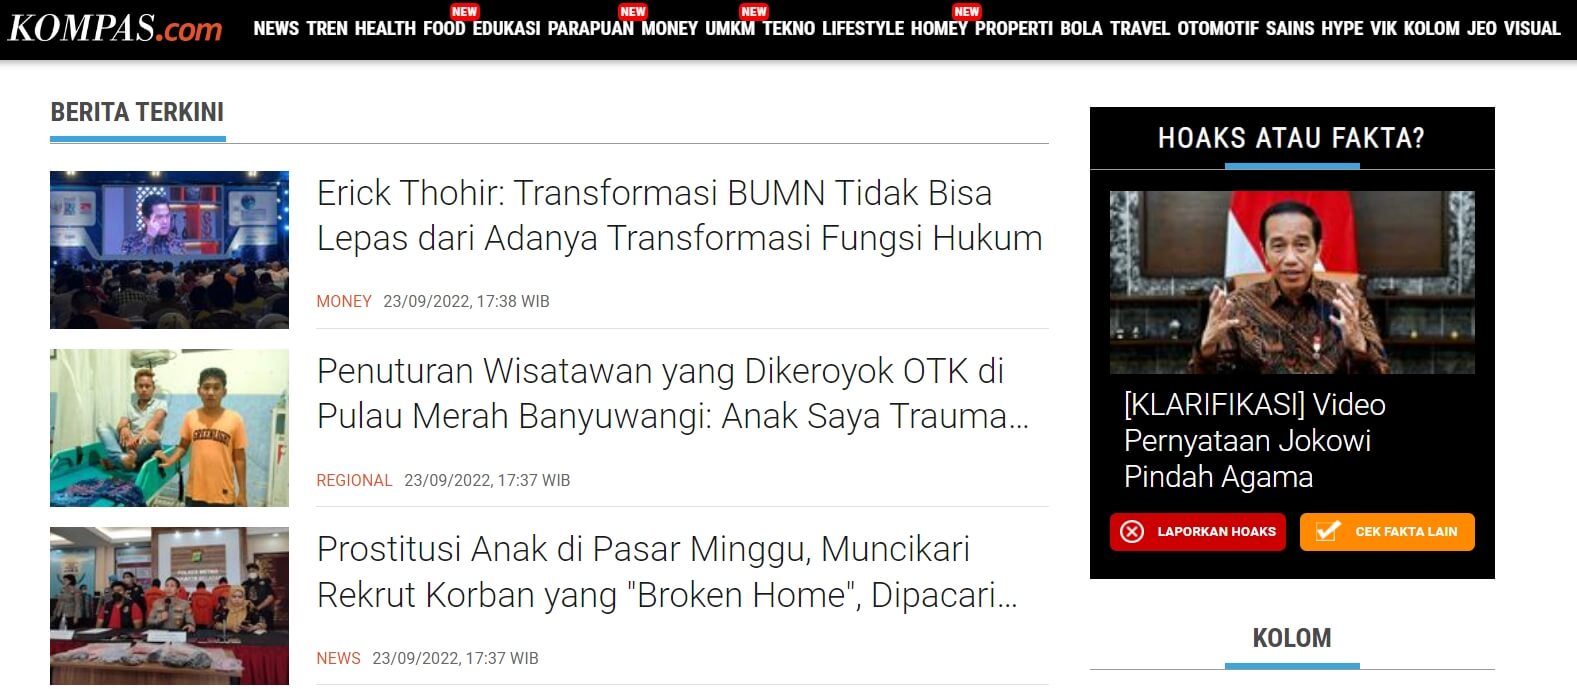 インドネシアのニュースサイトKompas.com